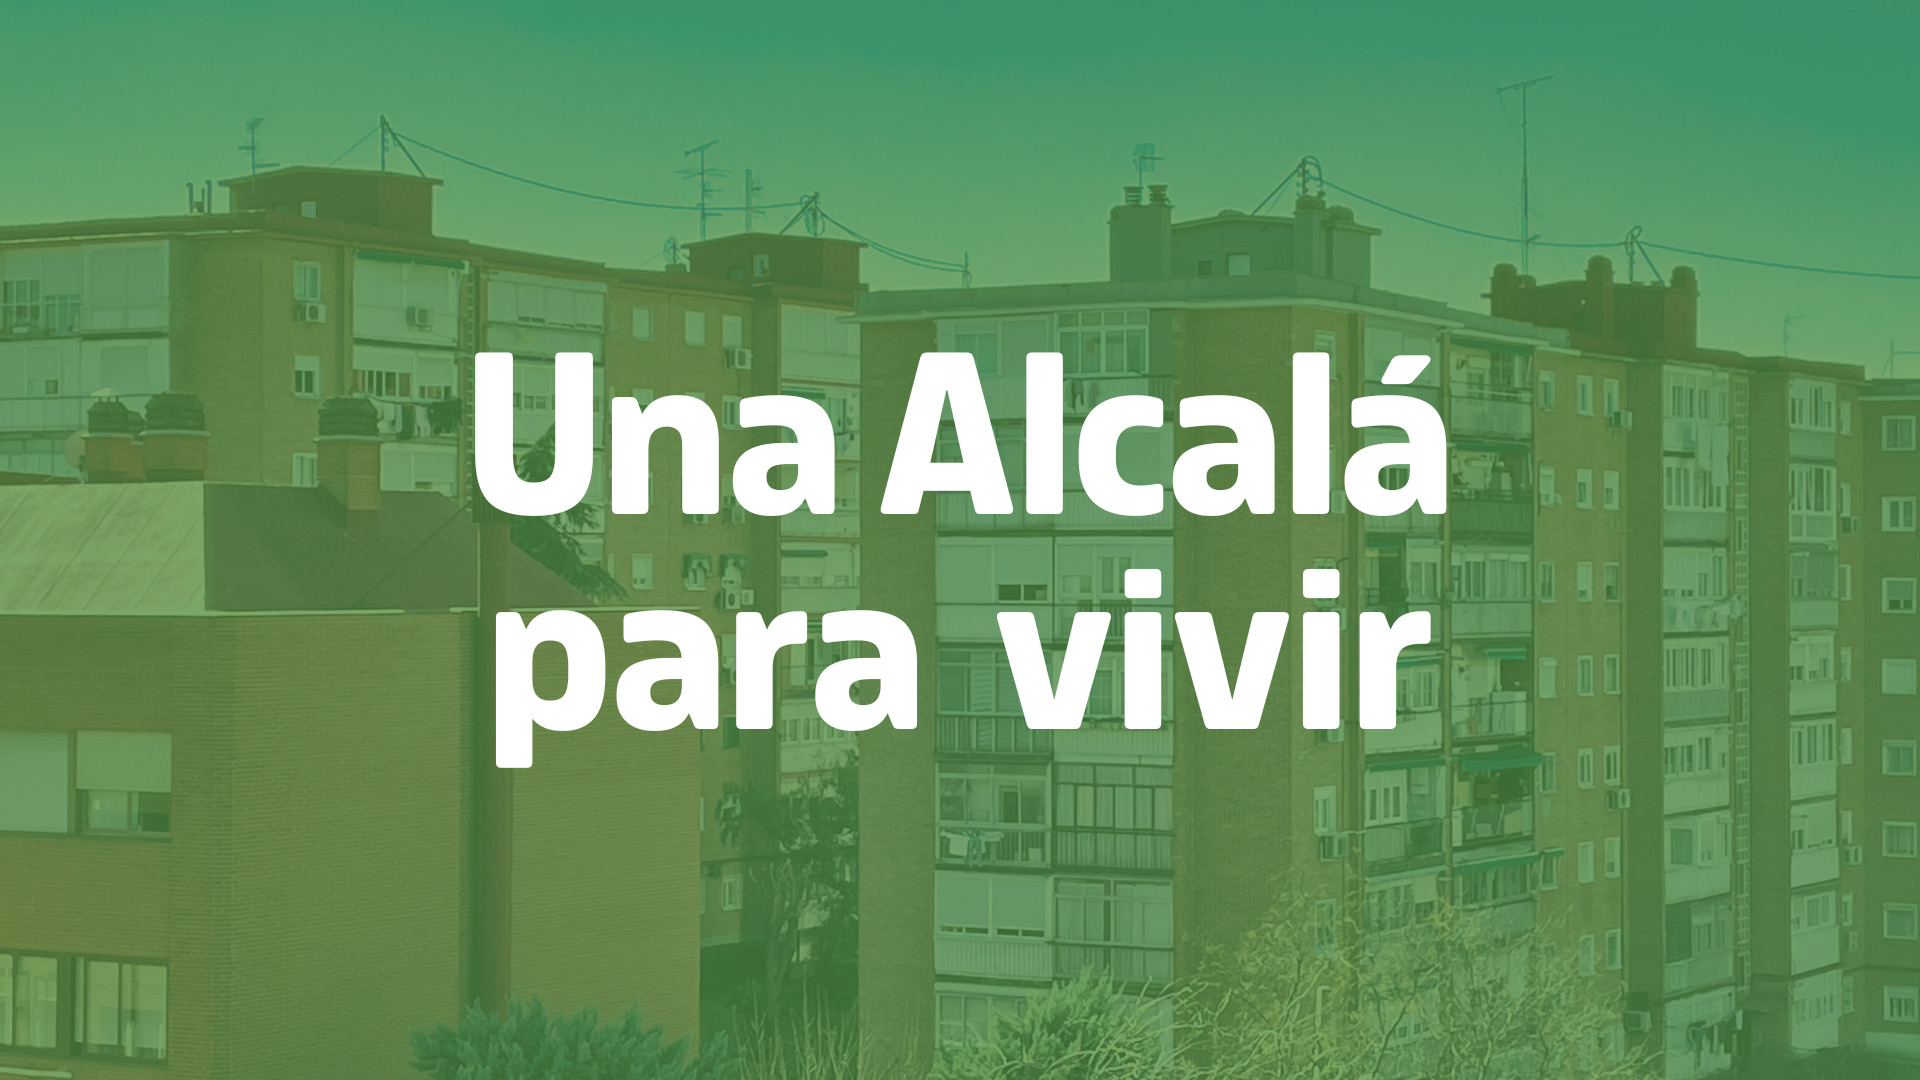 3. Una Alcalá para vivir